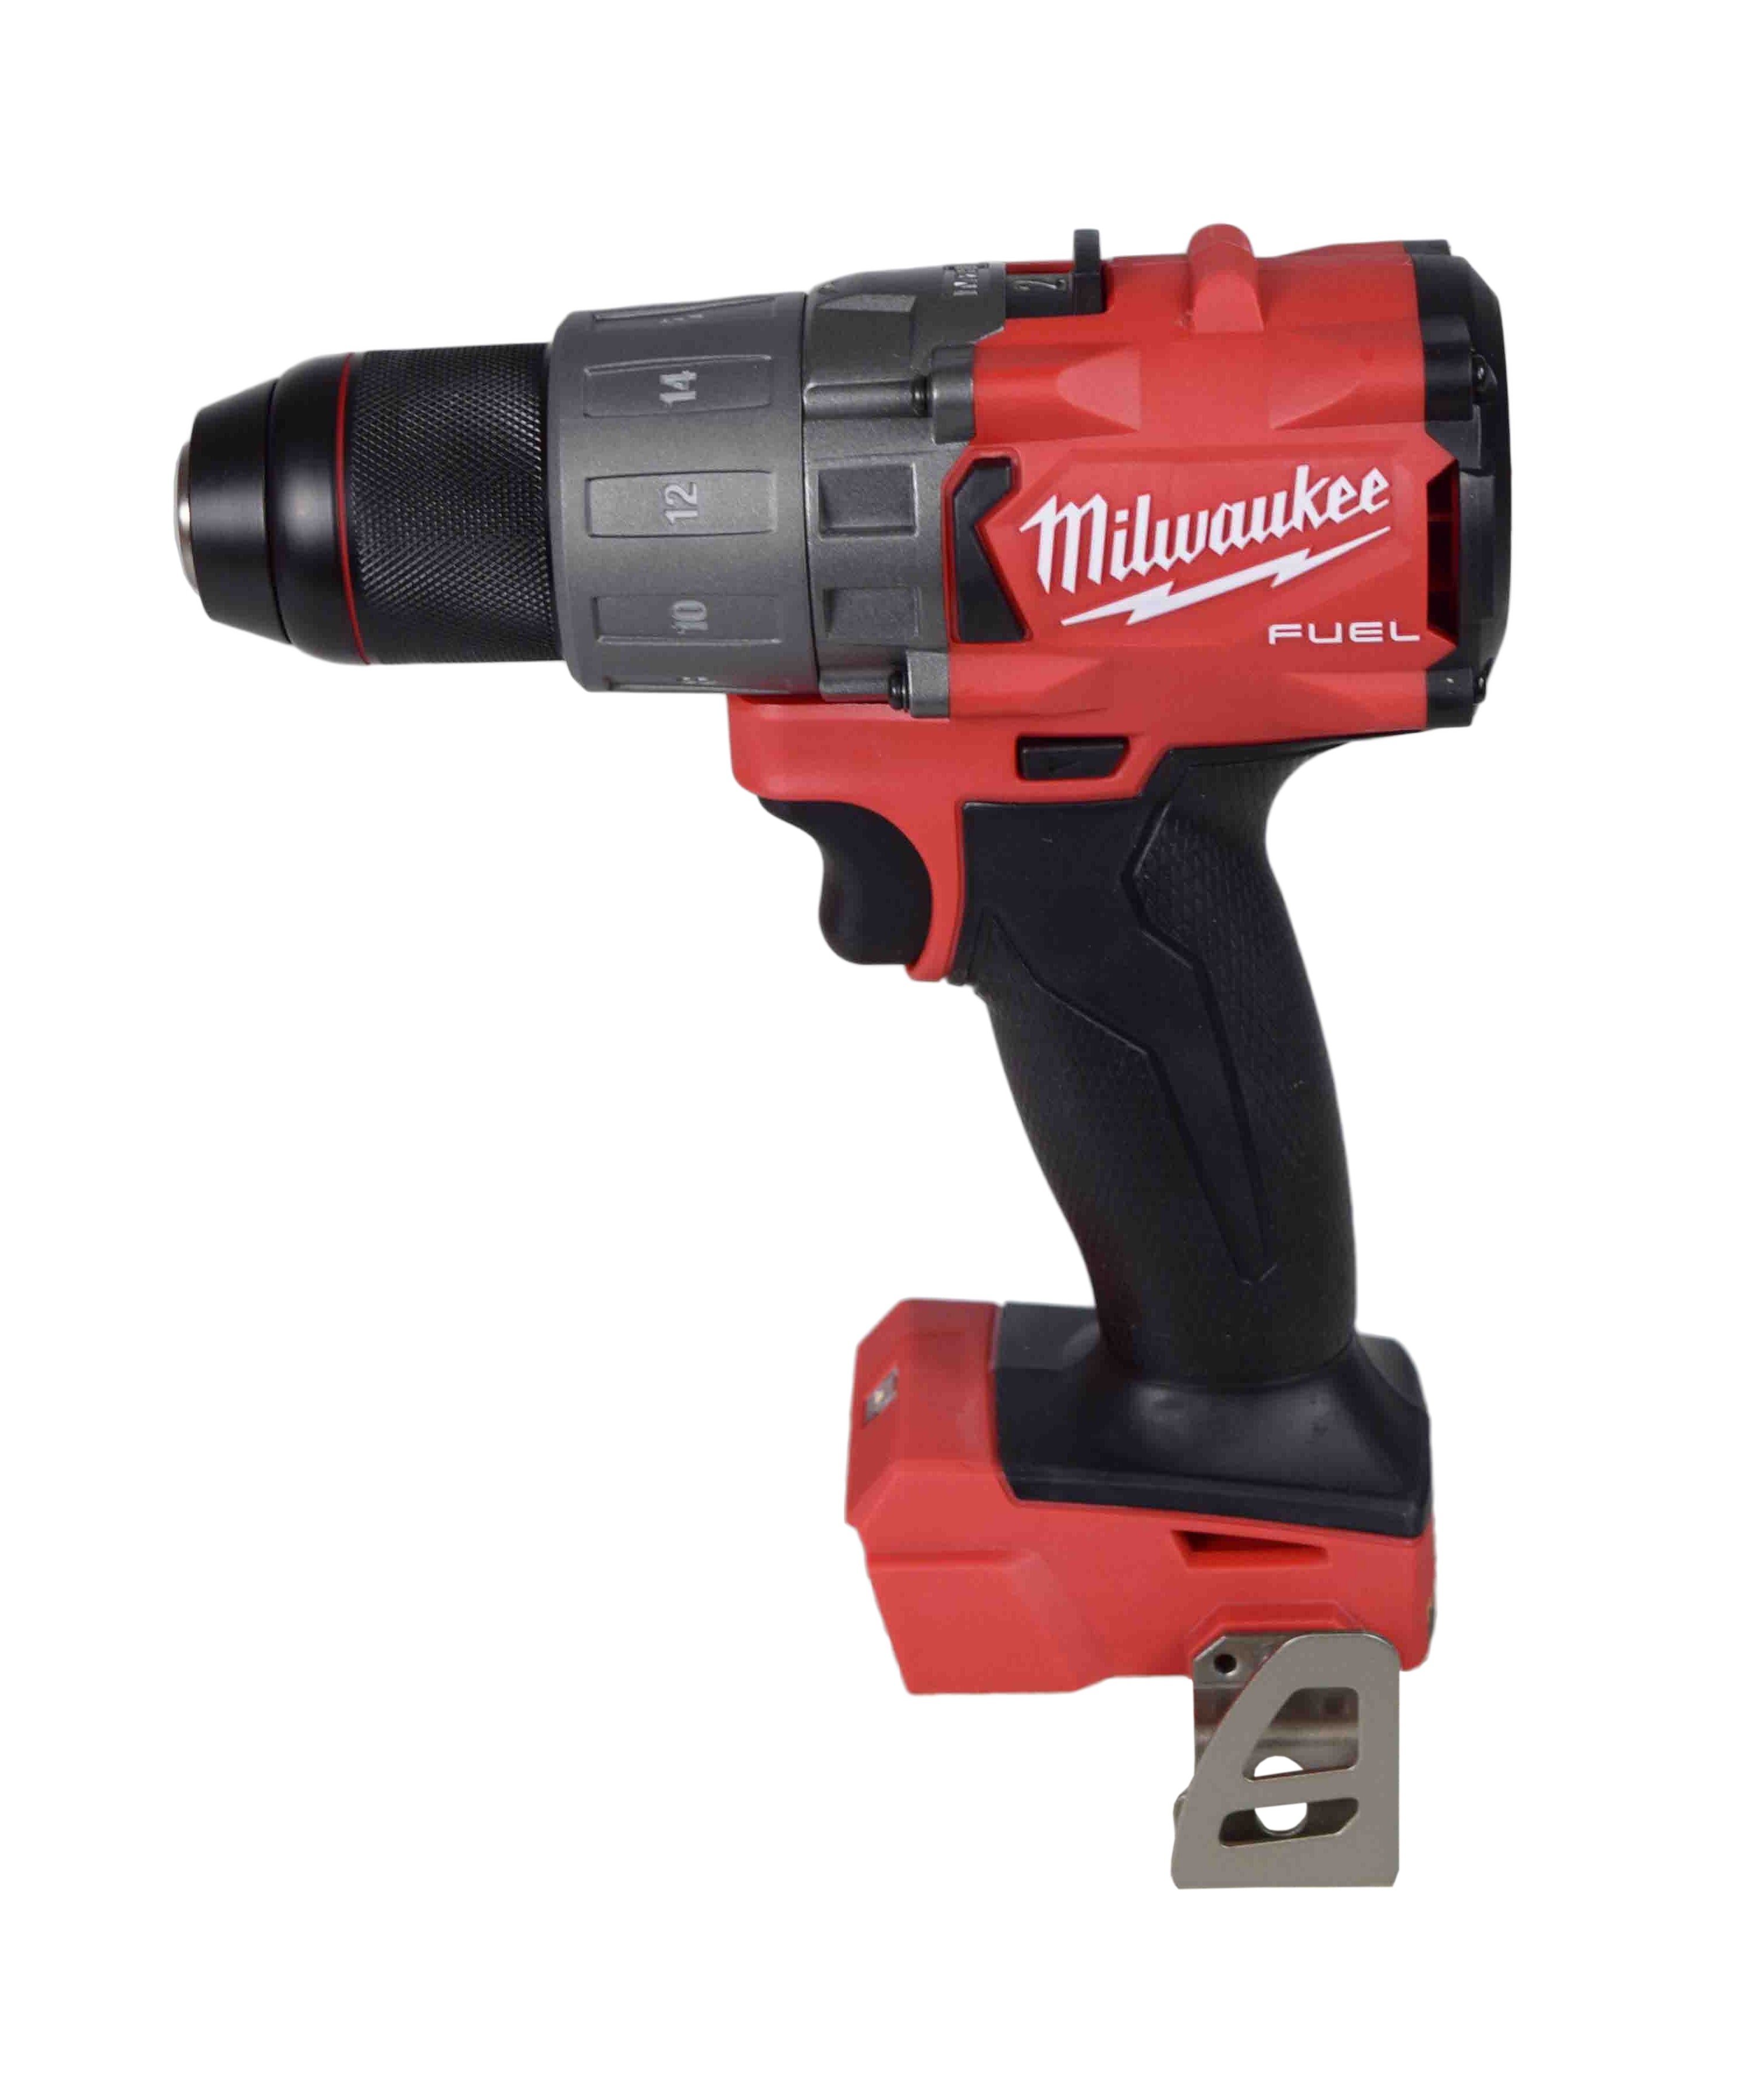 Milwaukee 2803-22 M18 Fuel Drill Driver Kit